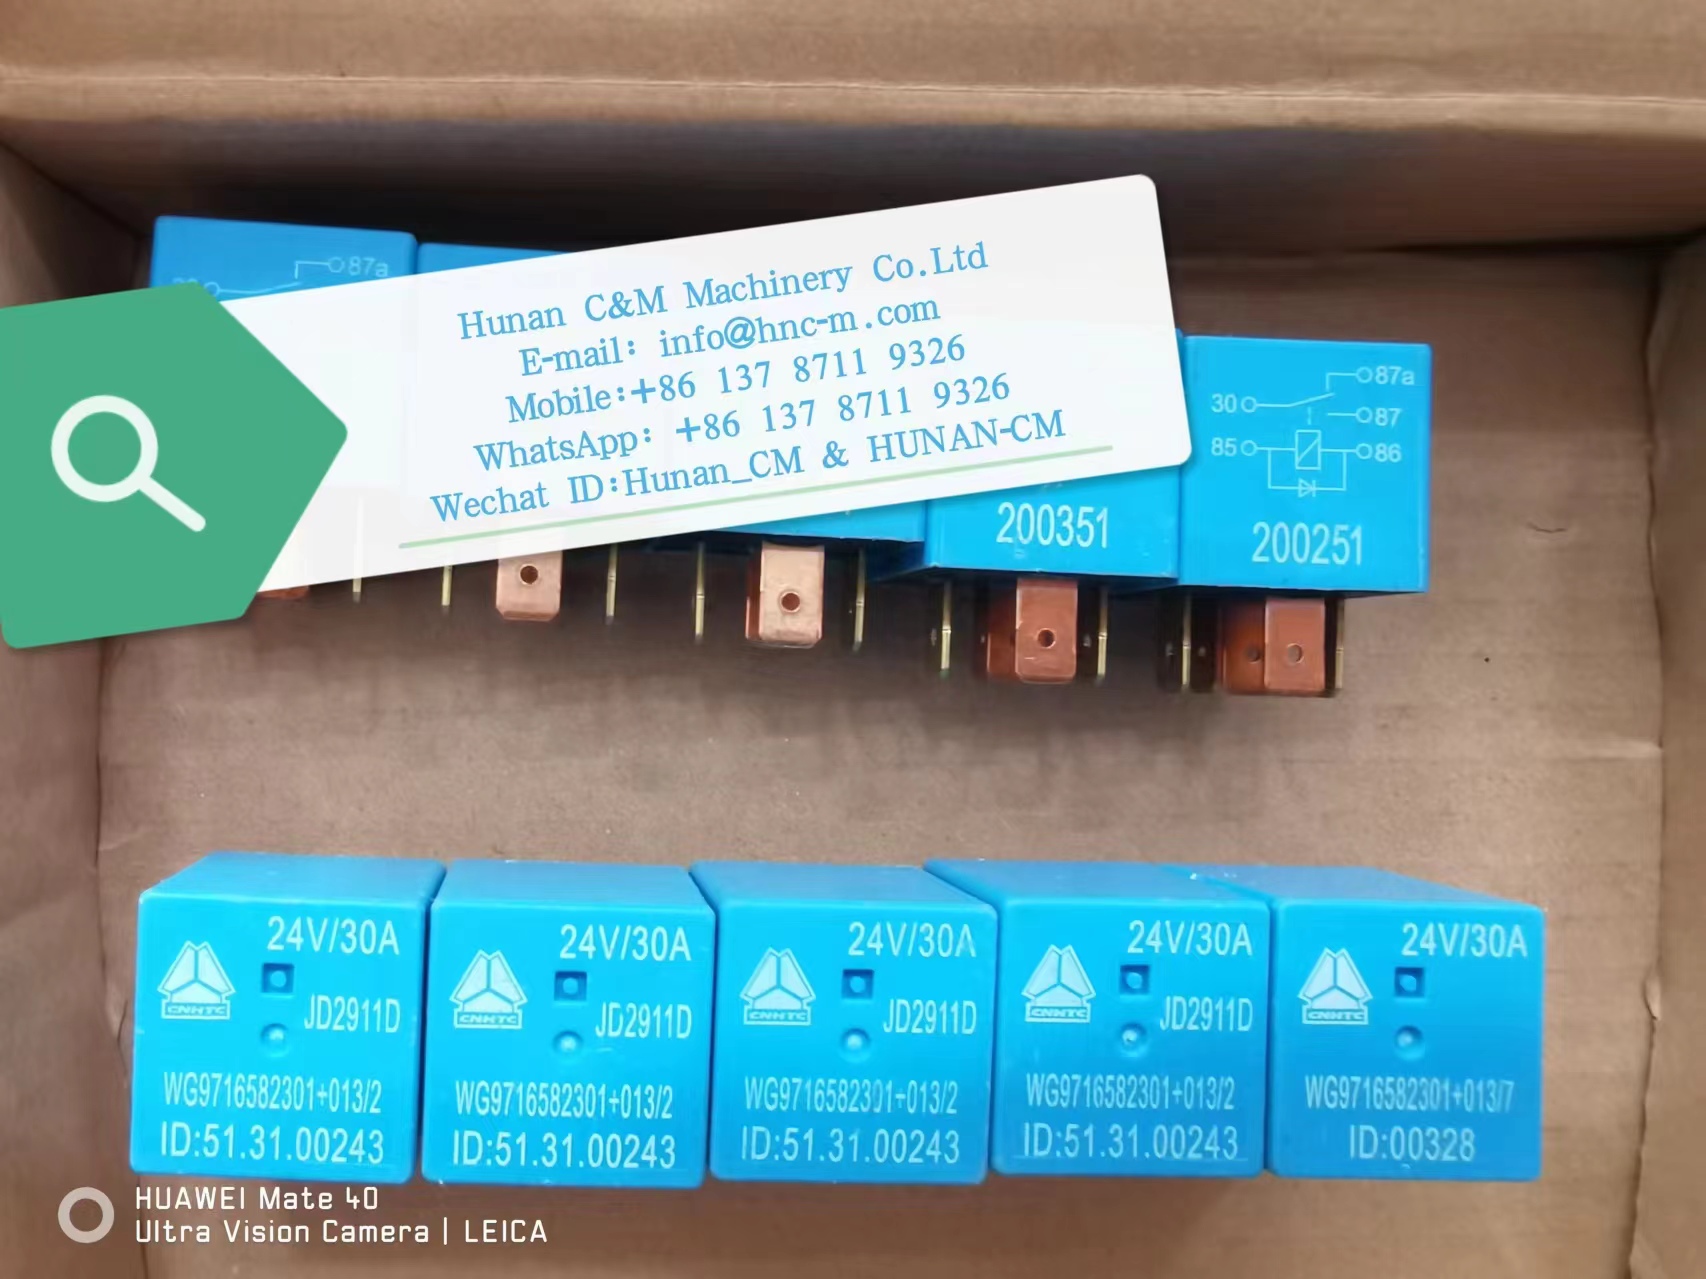 SINO-TRUCK wiper relays JD2911D WG9716582301+013/2